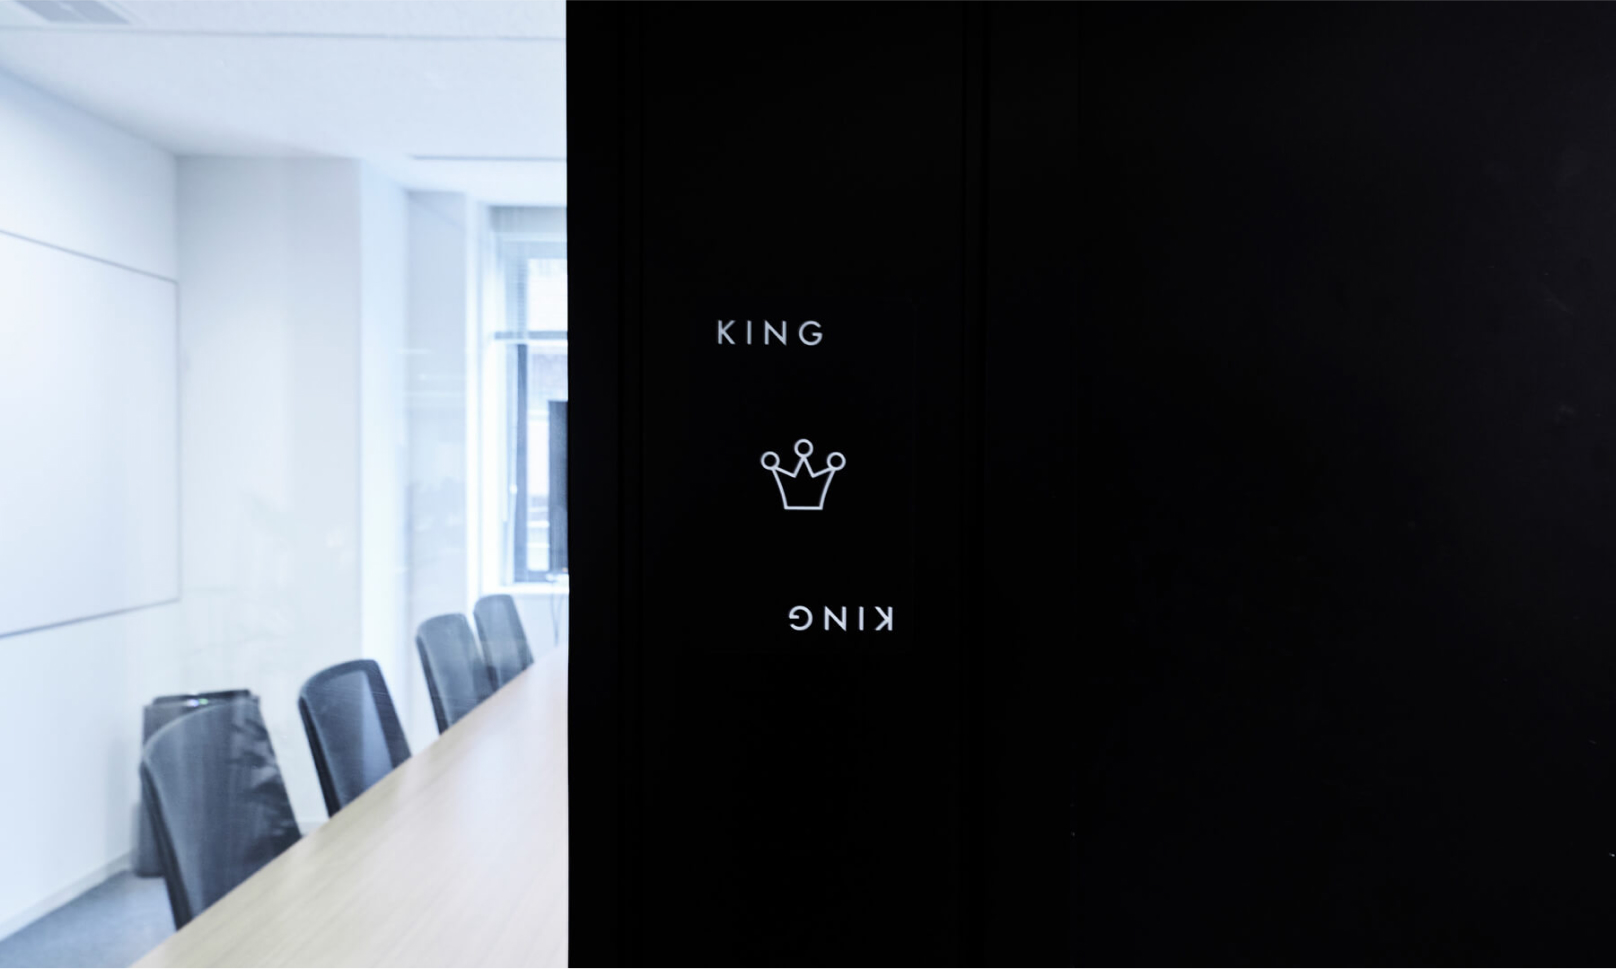 写真：左に会議室、右には会議室の名称である「KING」の文字と王冠のイラスト